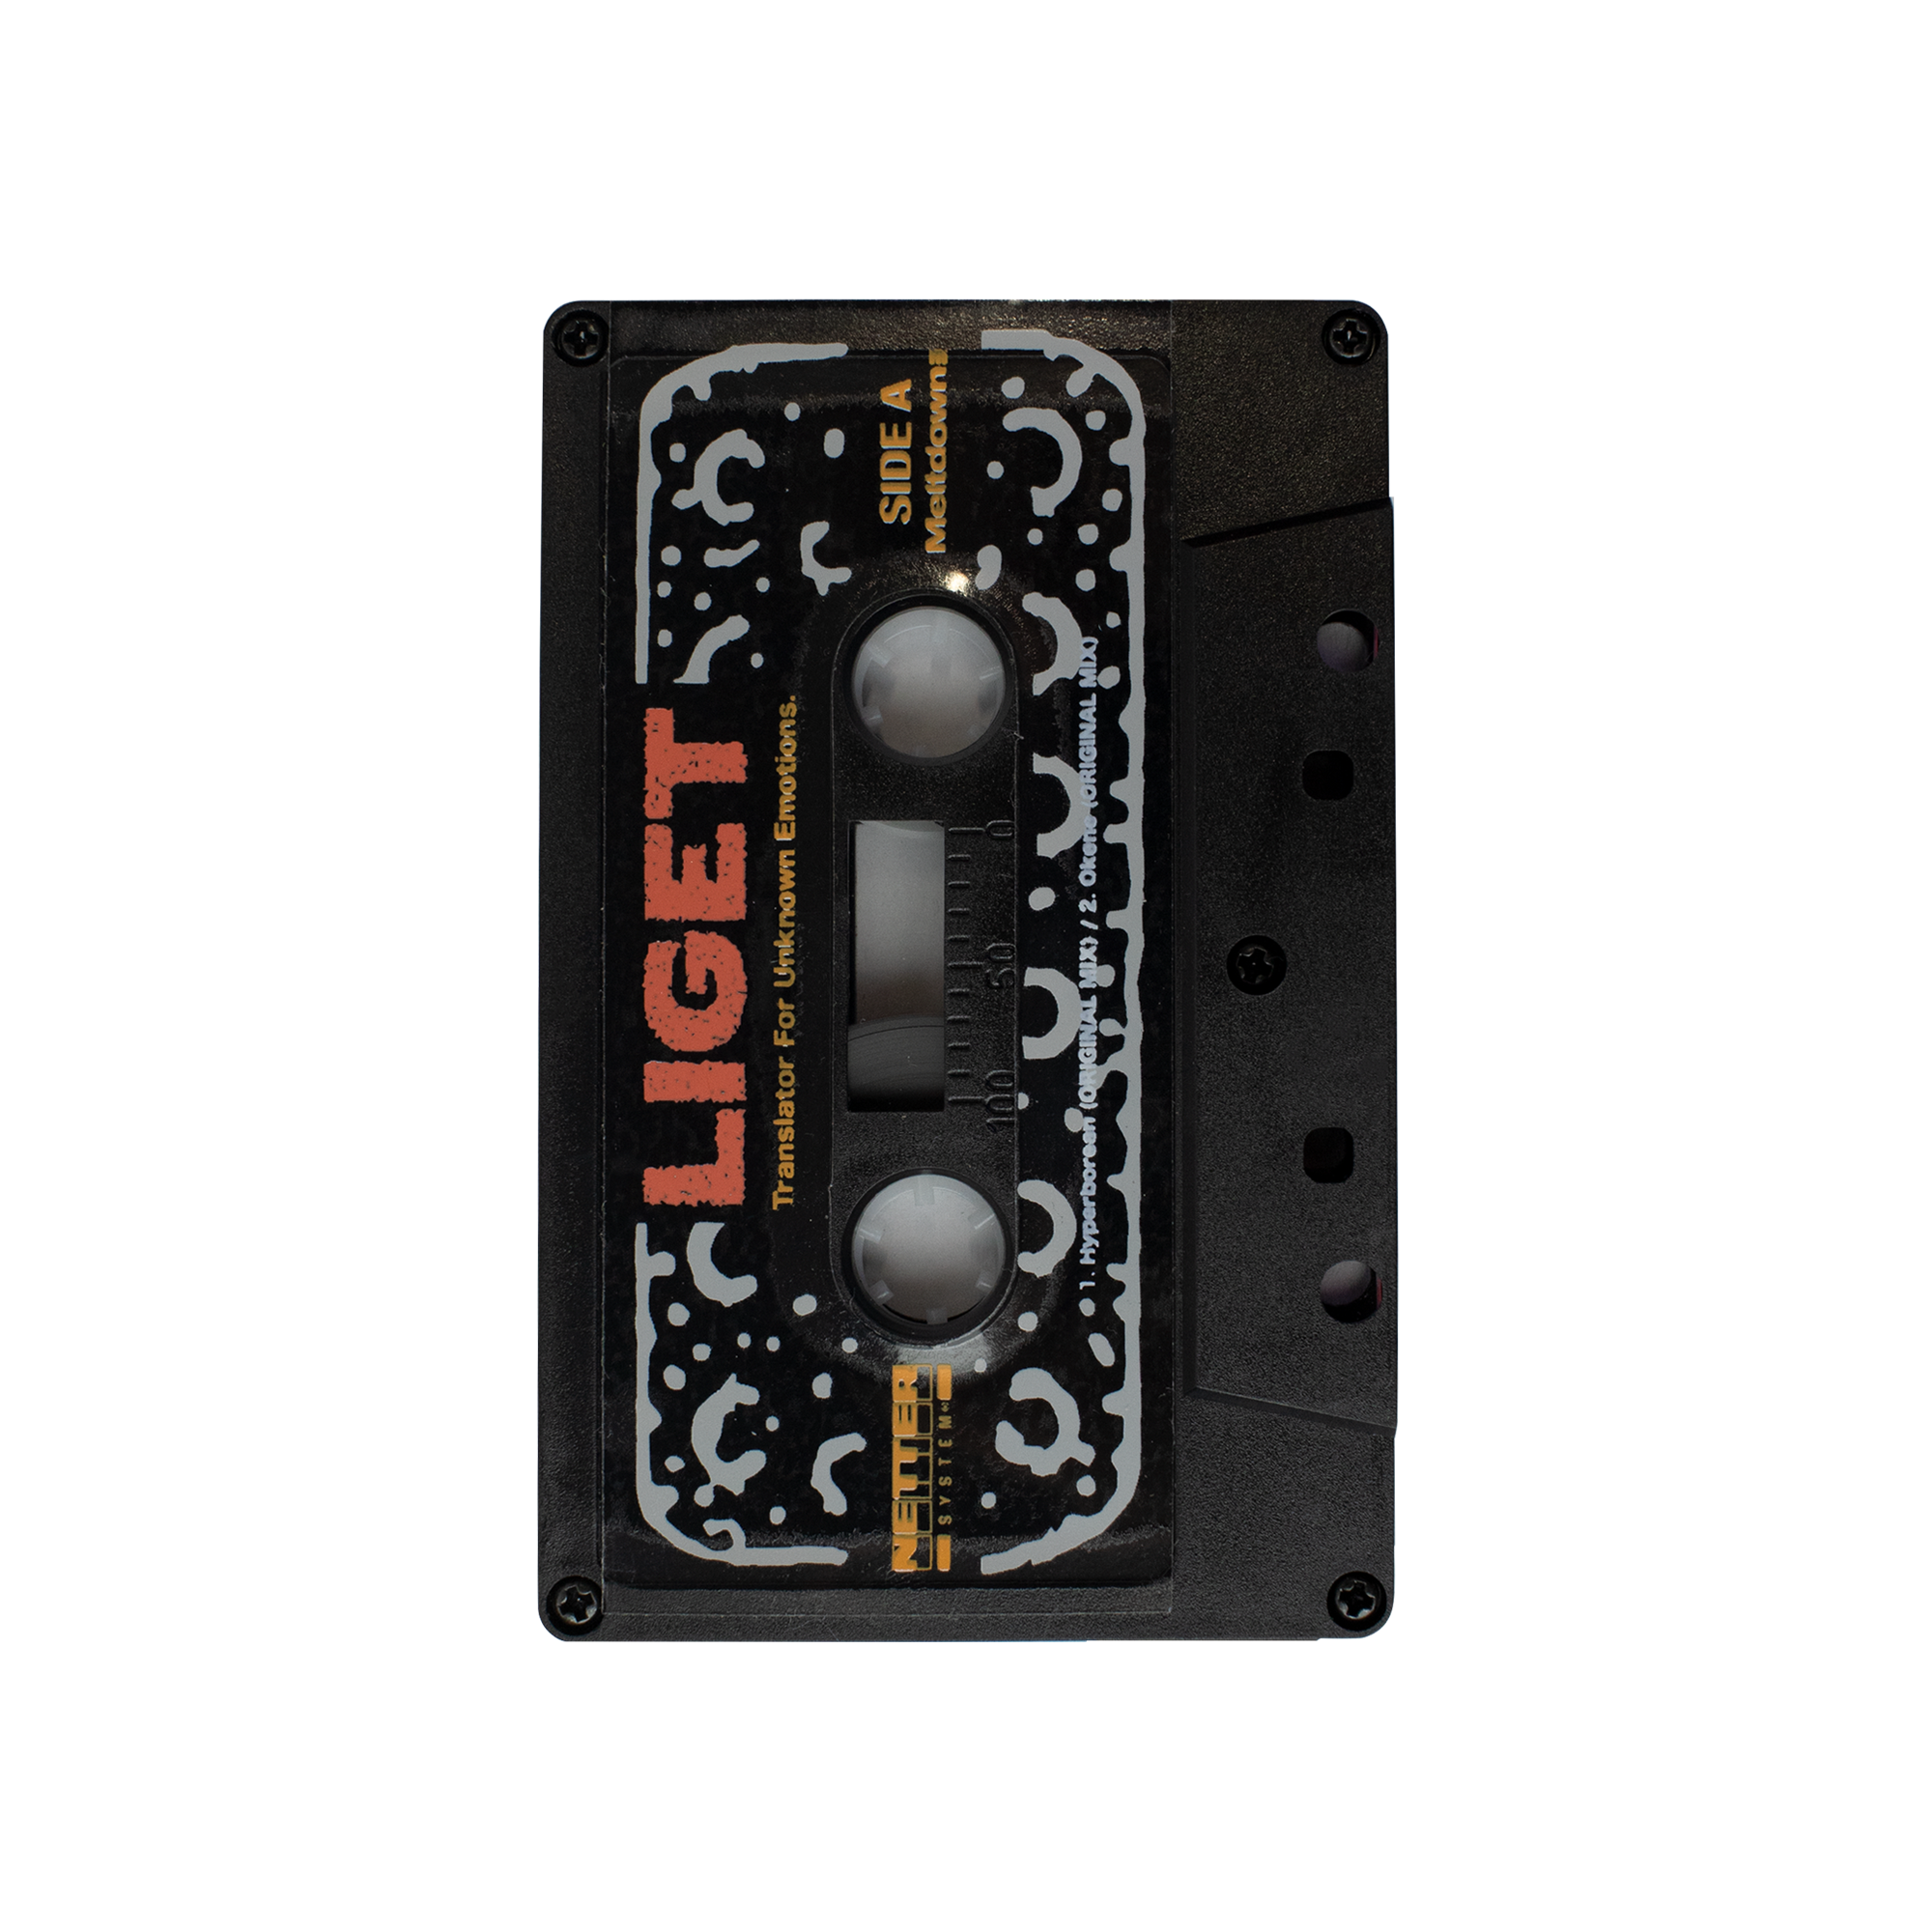 Netter System 001 - Liget Cassette Tape